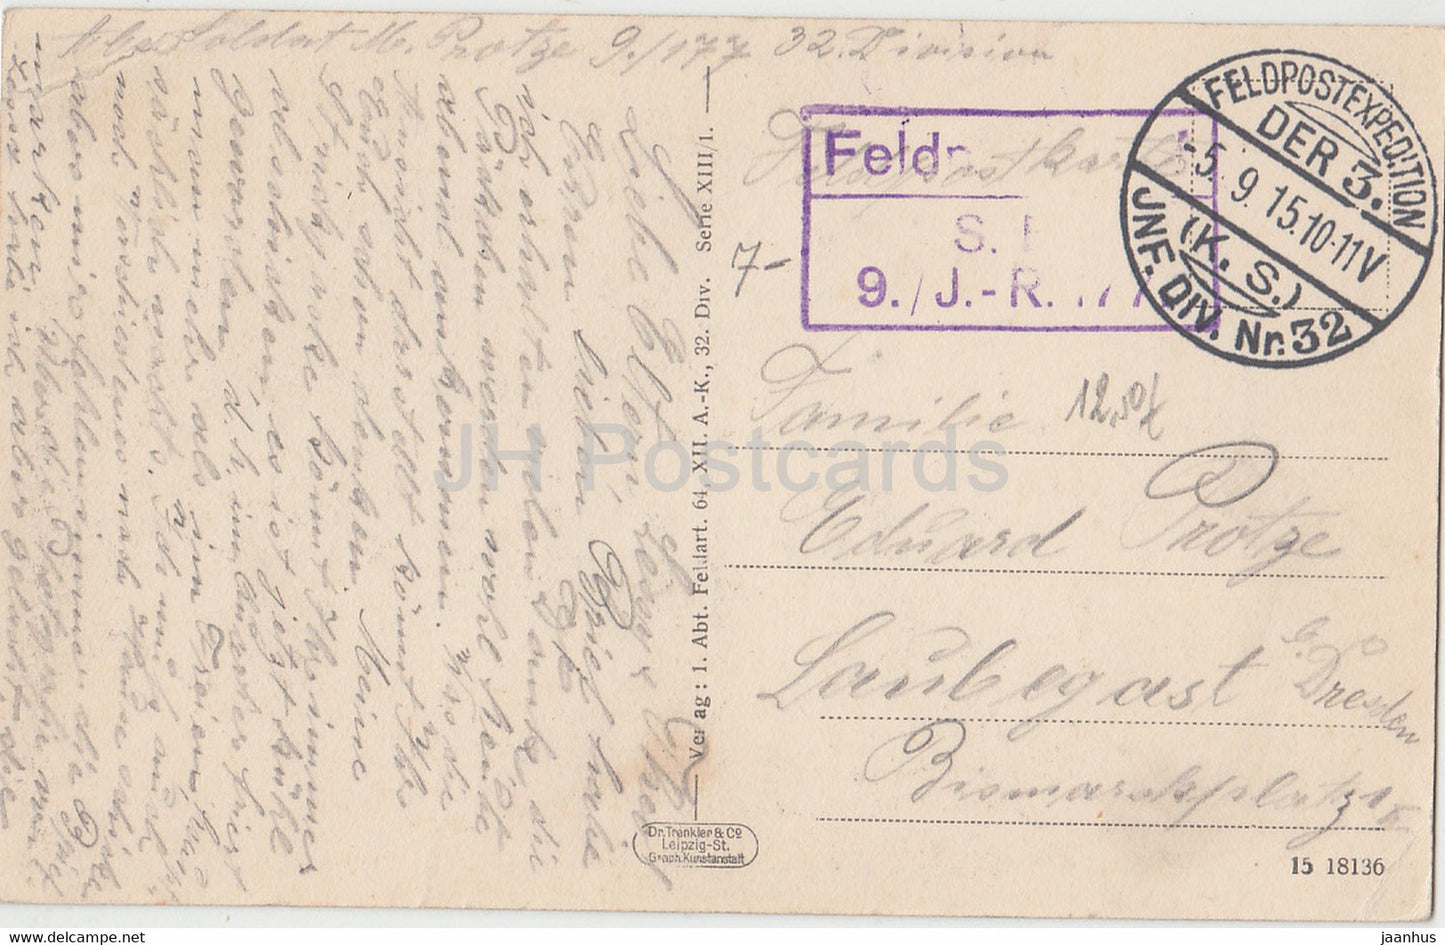 1 Abt Feldart 64 XII AK 32 Div. - Serie XIII - Feldpost - carte postale ancienne - 1915 - oblitérée